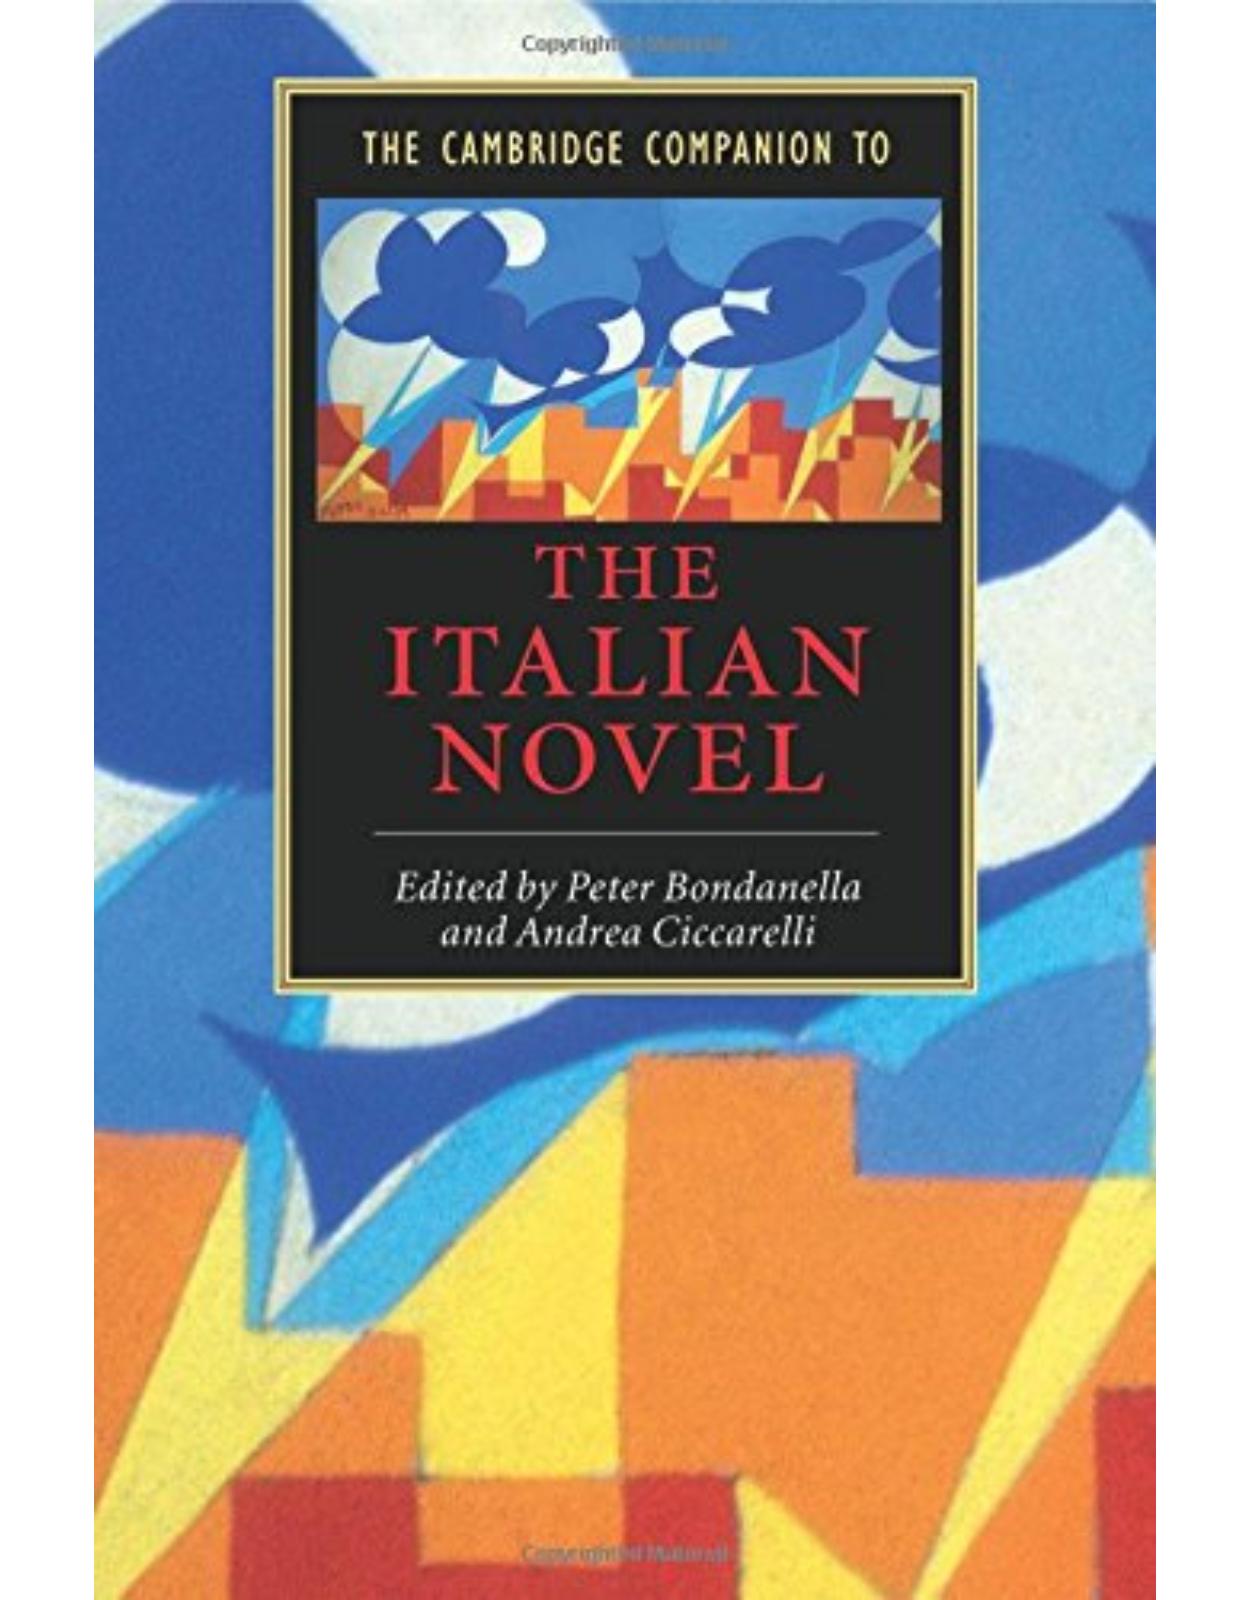 The Cambridge Companion to the Italian Novel (Cambridge Companions to Literature)